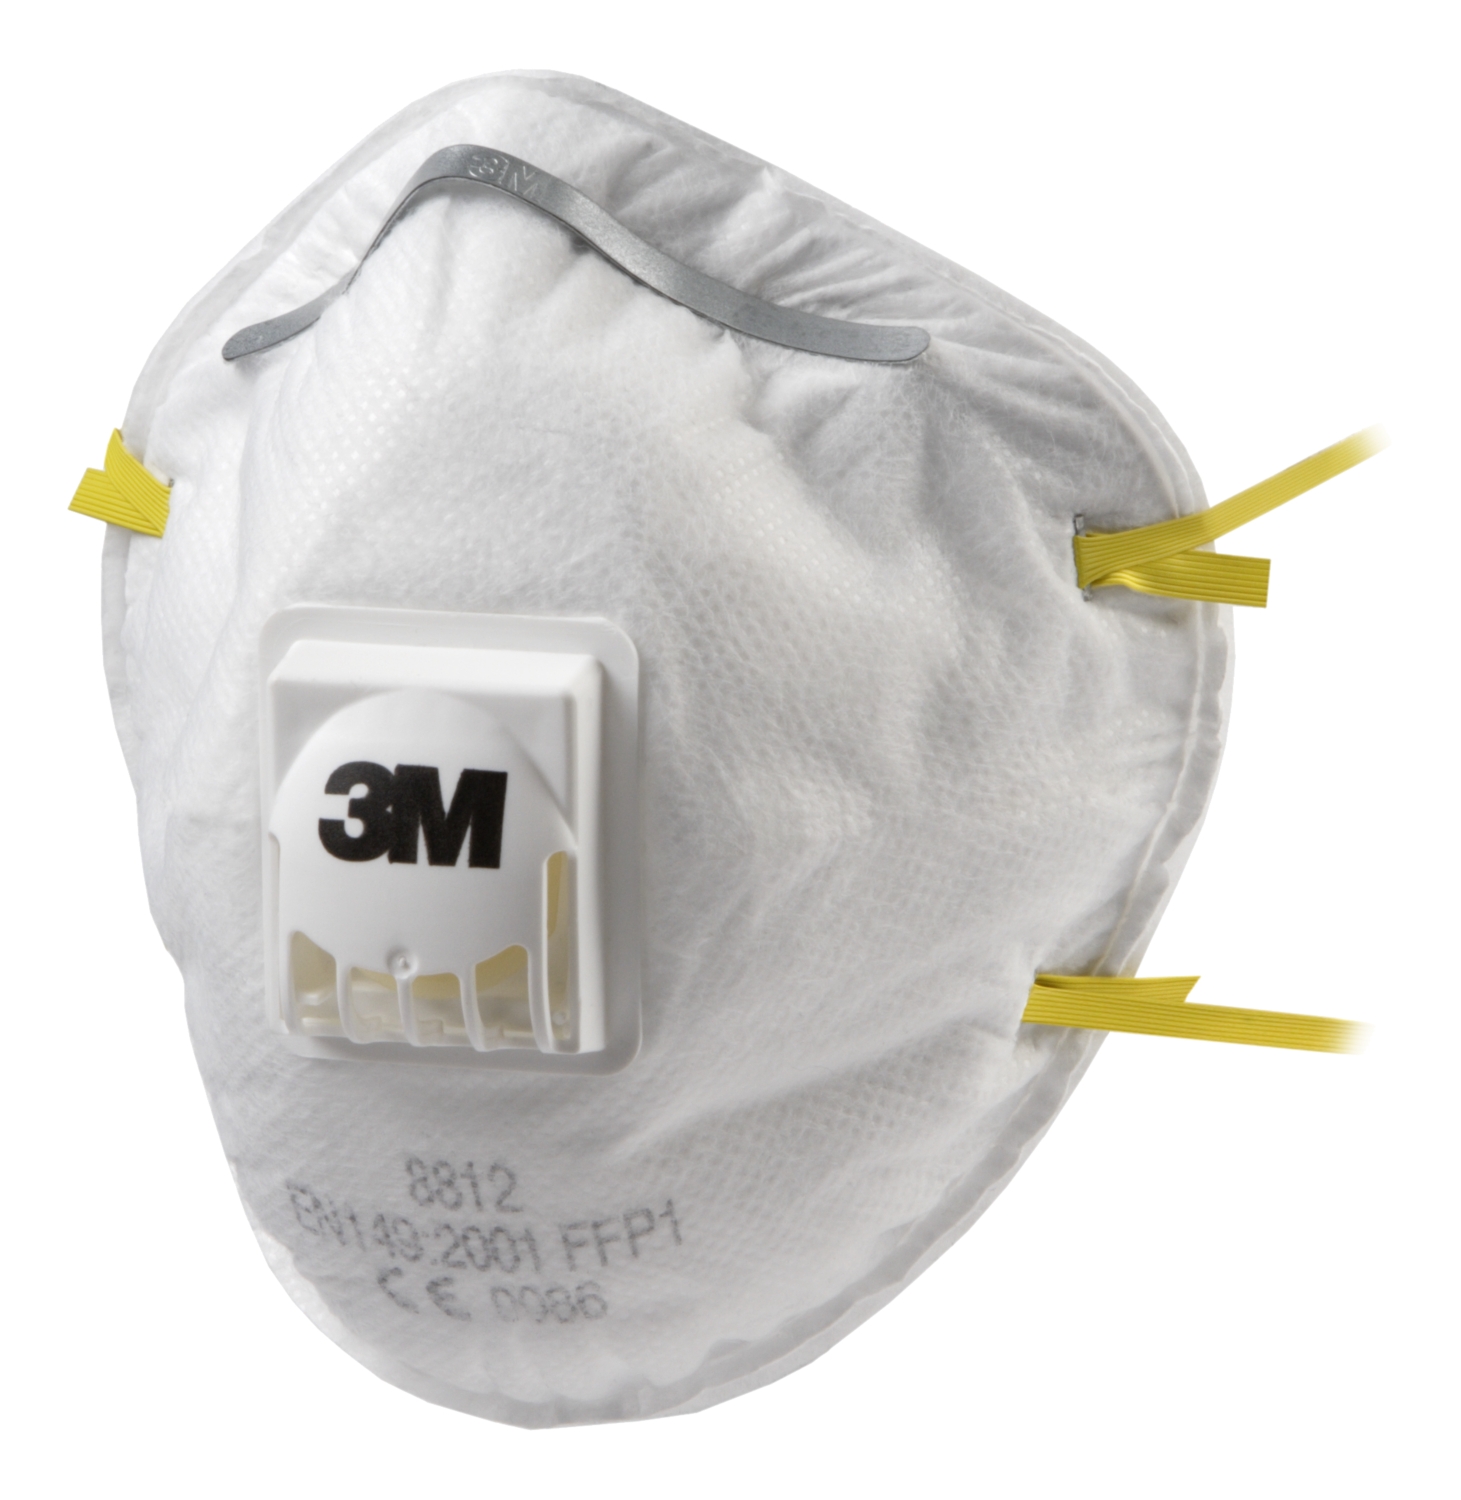 Masque jetable anti-poussière 8812 - FFP1 3M protection